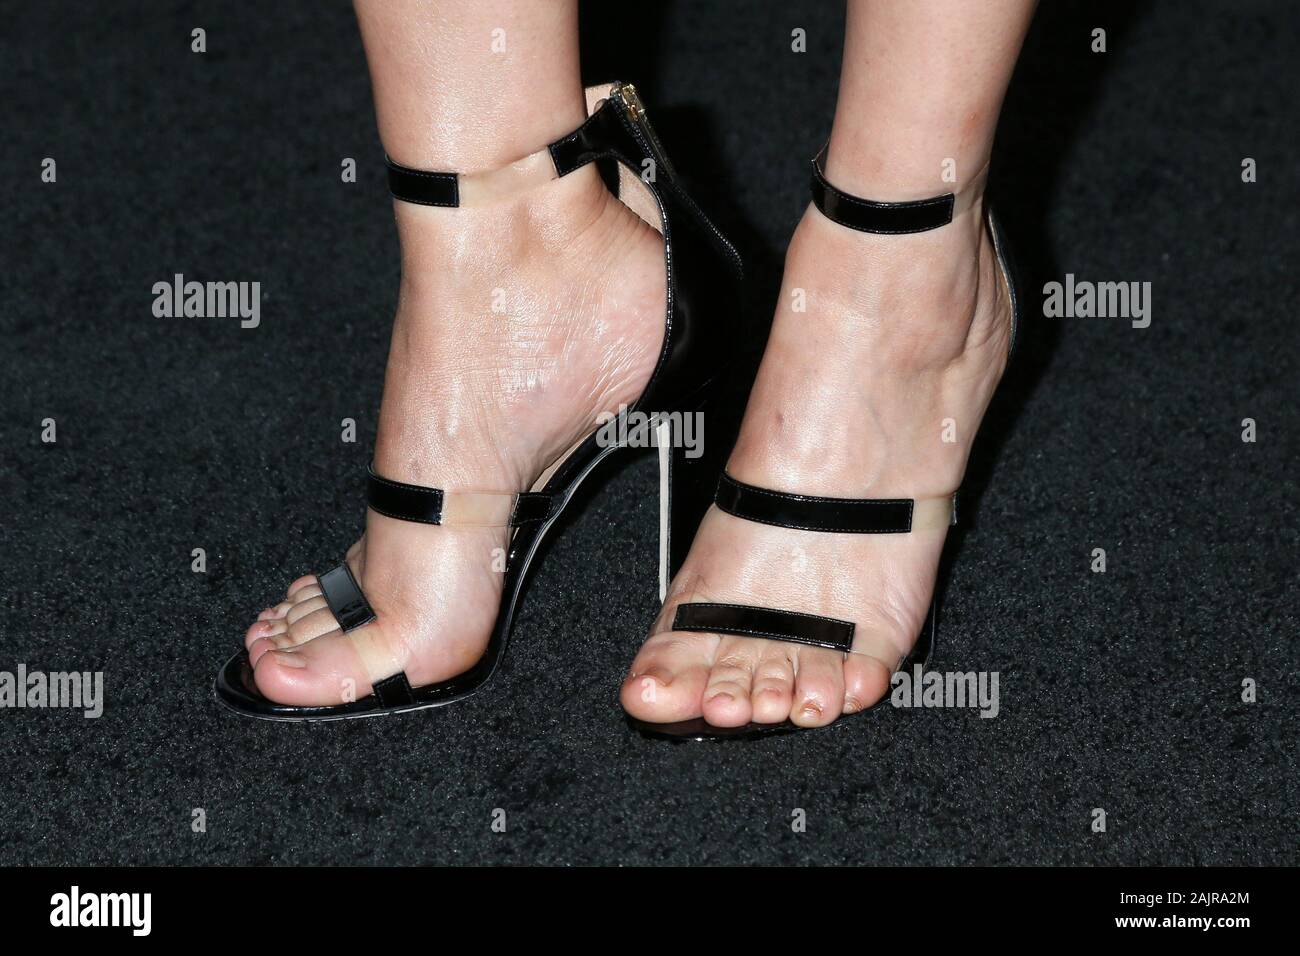 Alice wetterlund feet